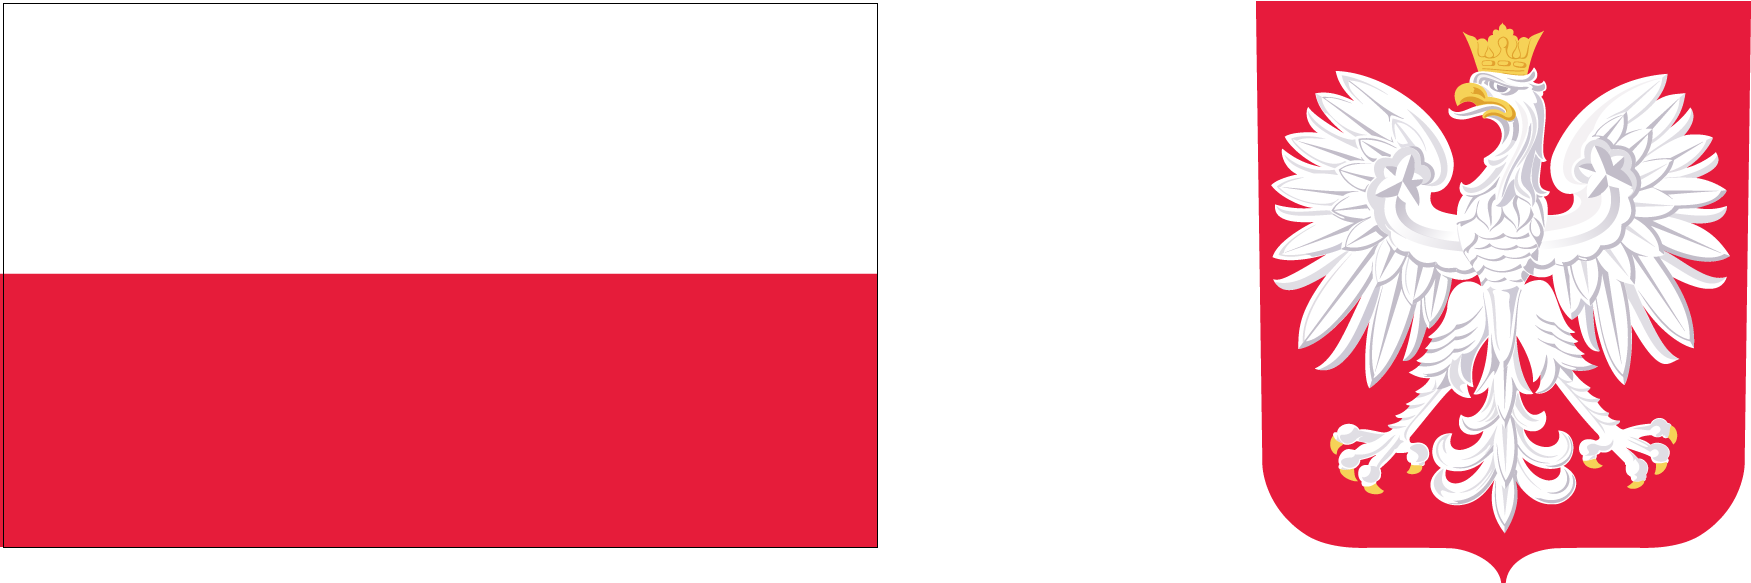 Zdjęcie przedstawiające flagę i godło Polski.